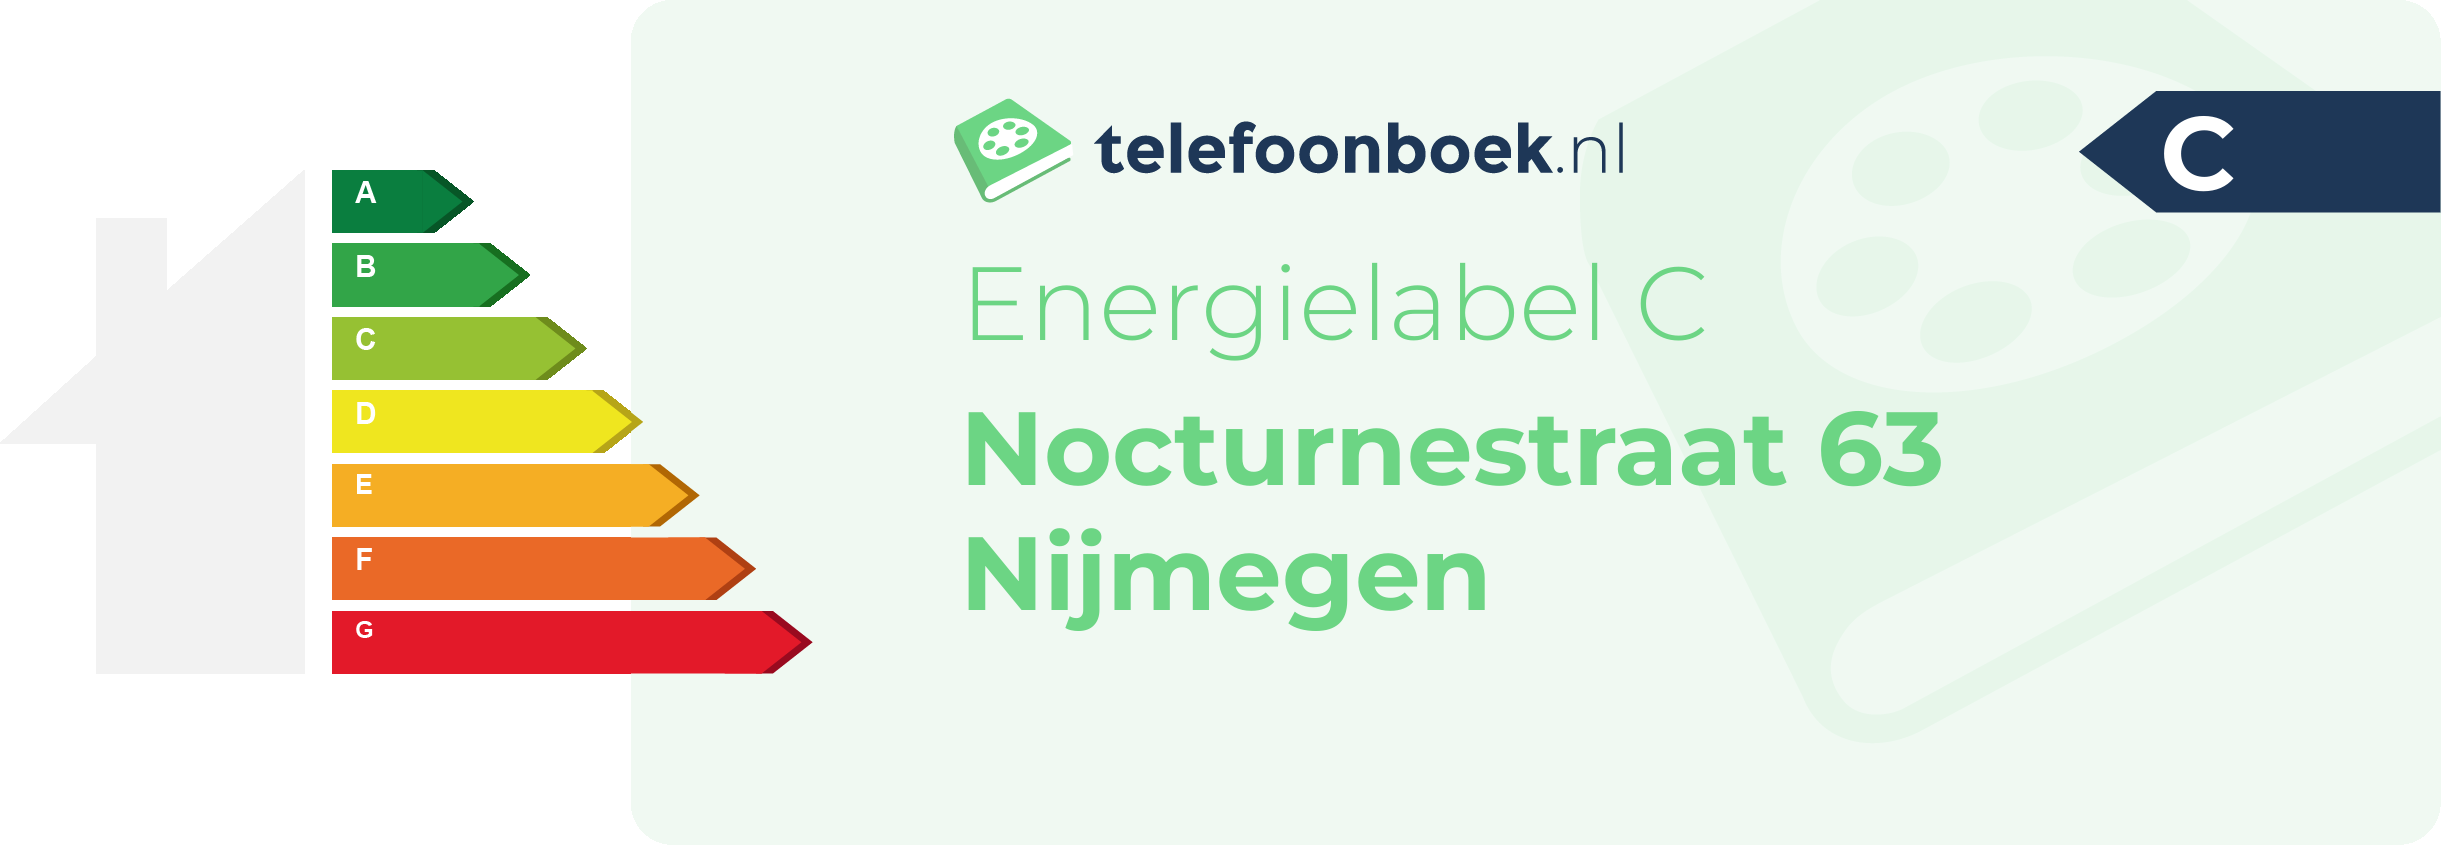 Energielabel Nocturnestraat 63 Nijmegen